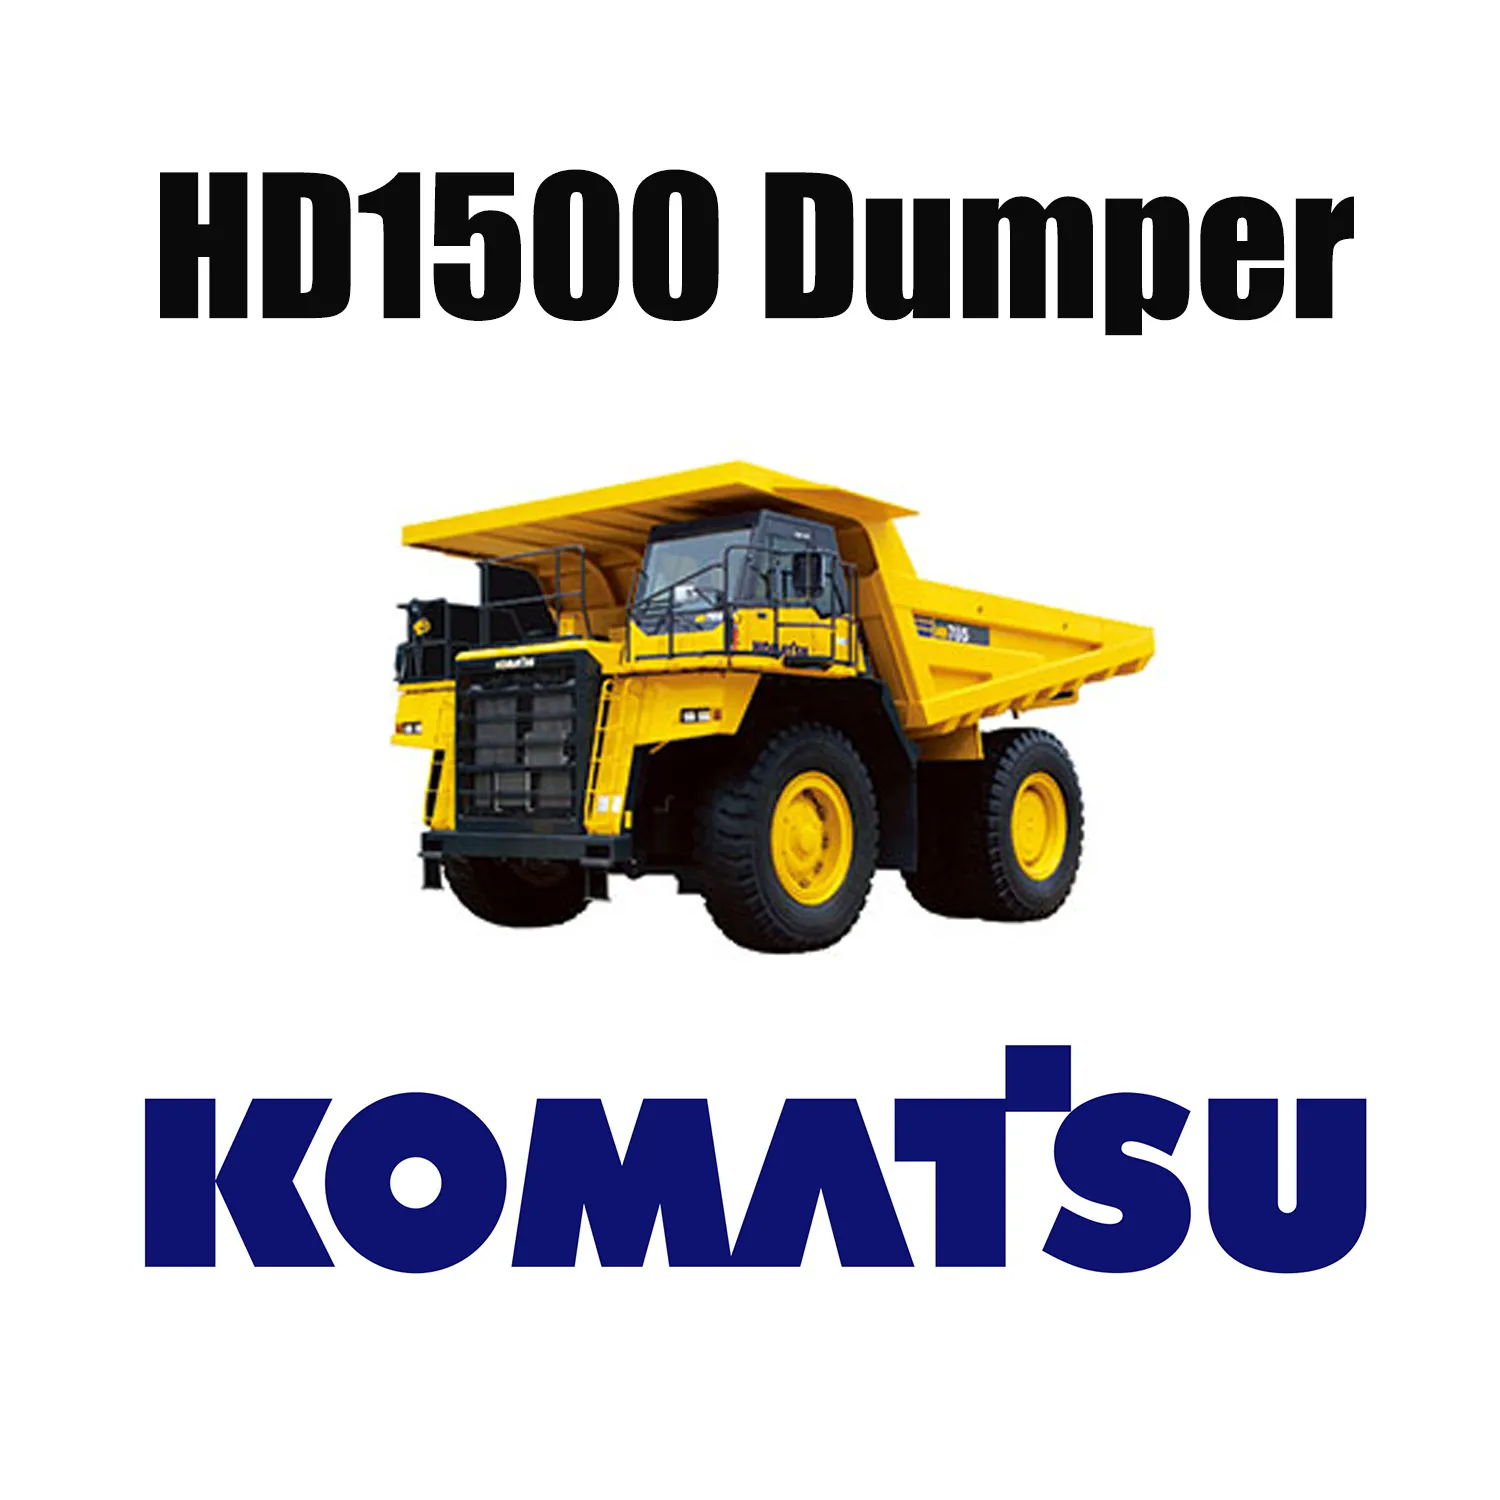 KOMATSU HD1500 Mechaniczna ciężarówka pasuje do specjalnych opon EarthMover 33.00R51